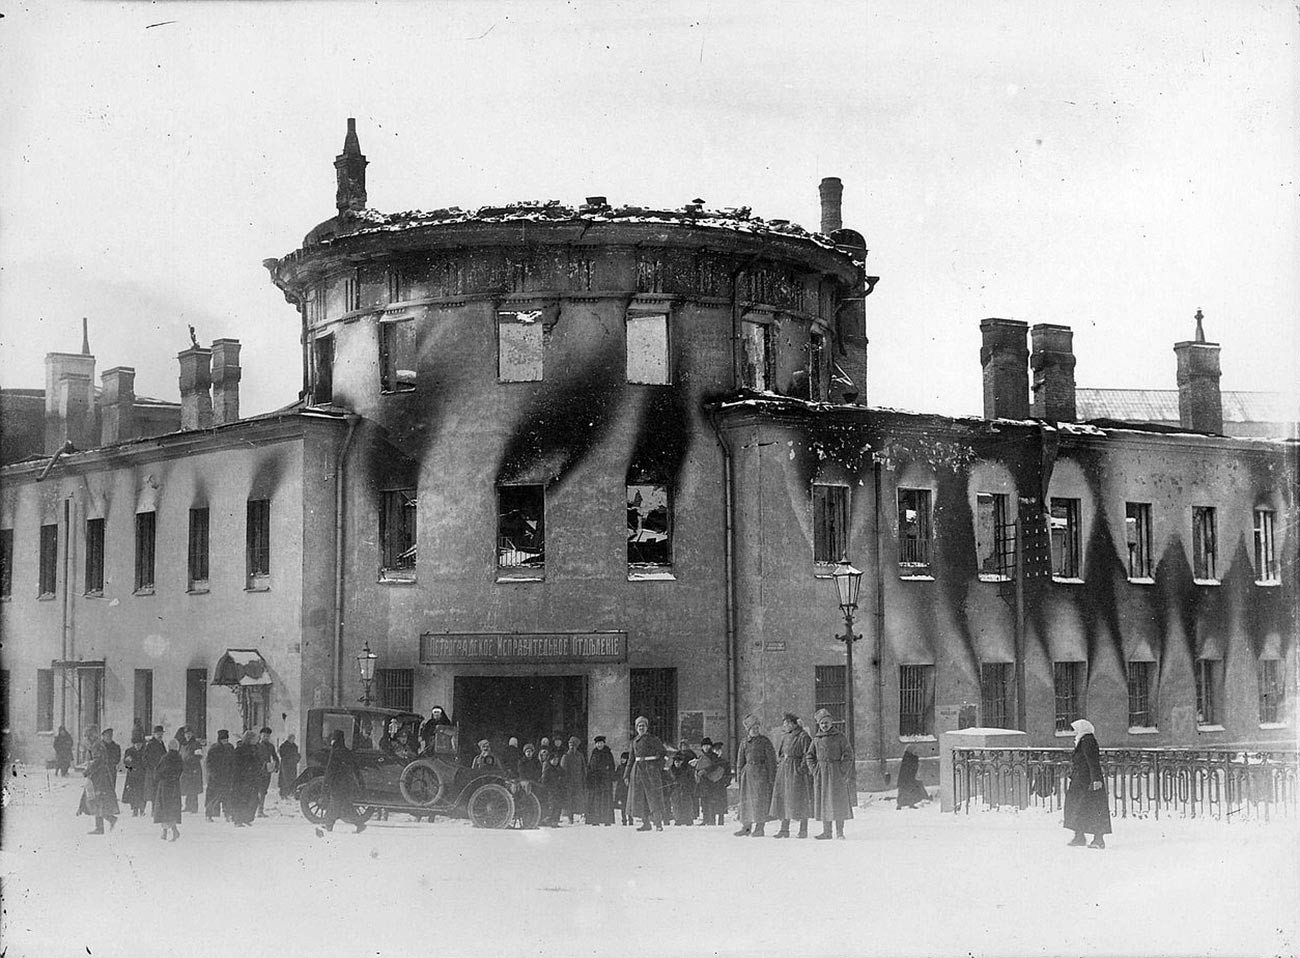 Devant le château de Lituanie incendié, ancienne prison de la ville de Saint-Pétersbourg, après 1917